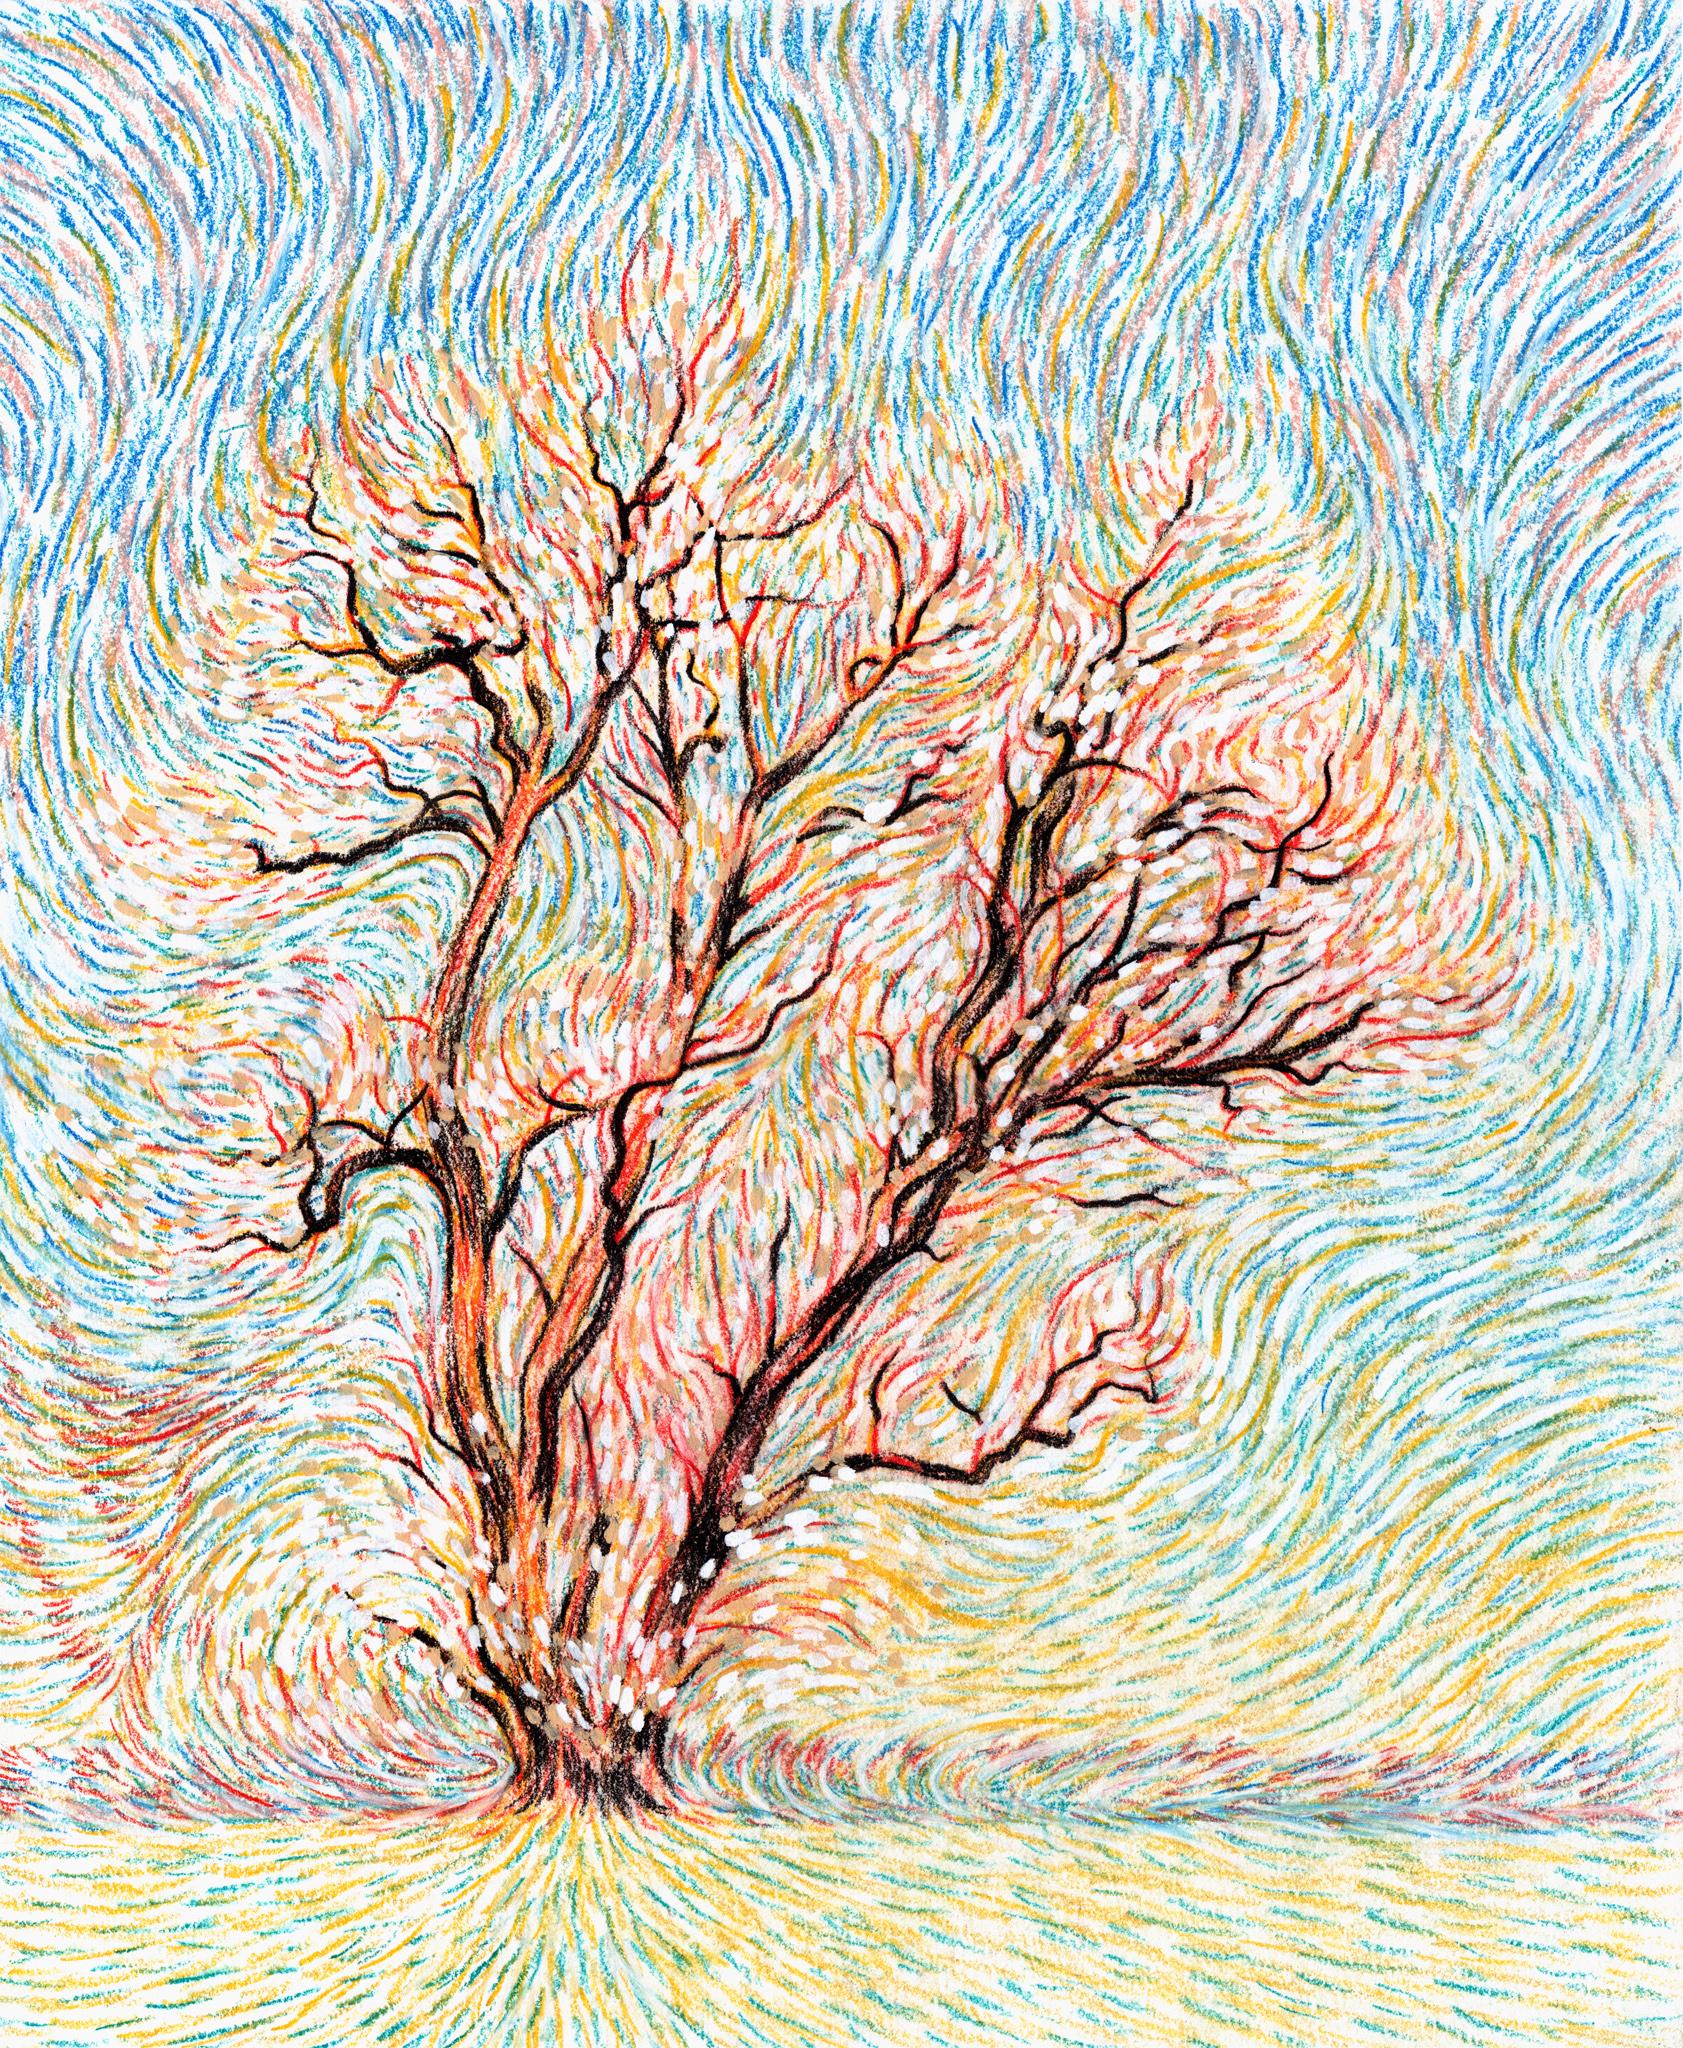 Zeitgenössische kanadische Kunst von Christian Frederiksen - The Fire Tree